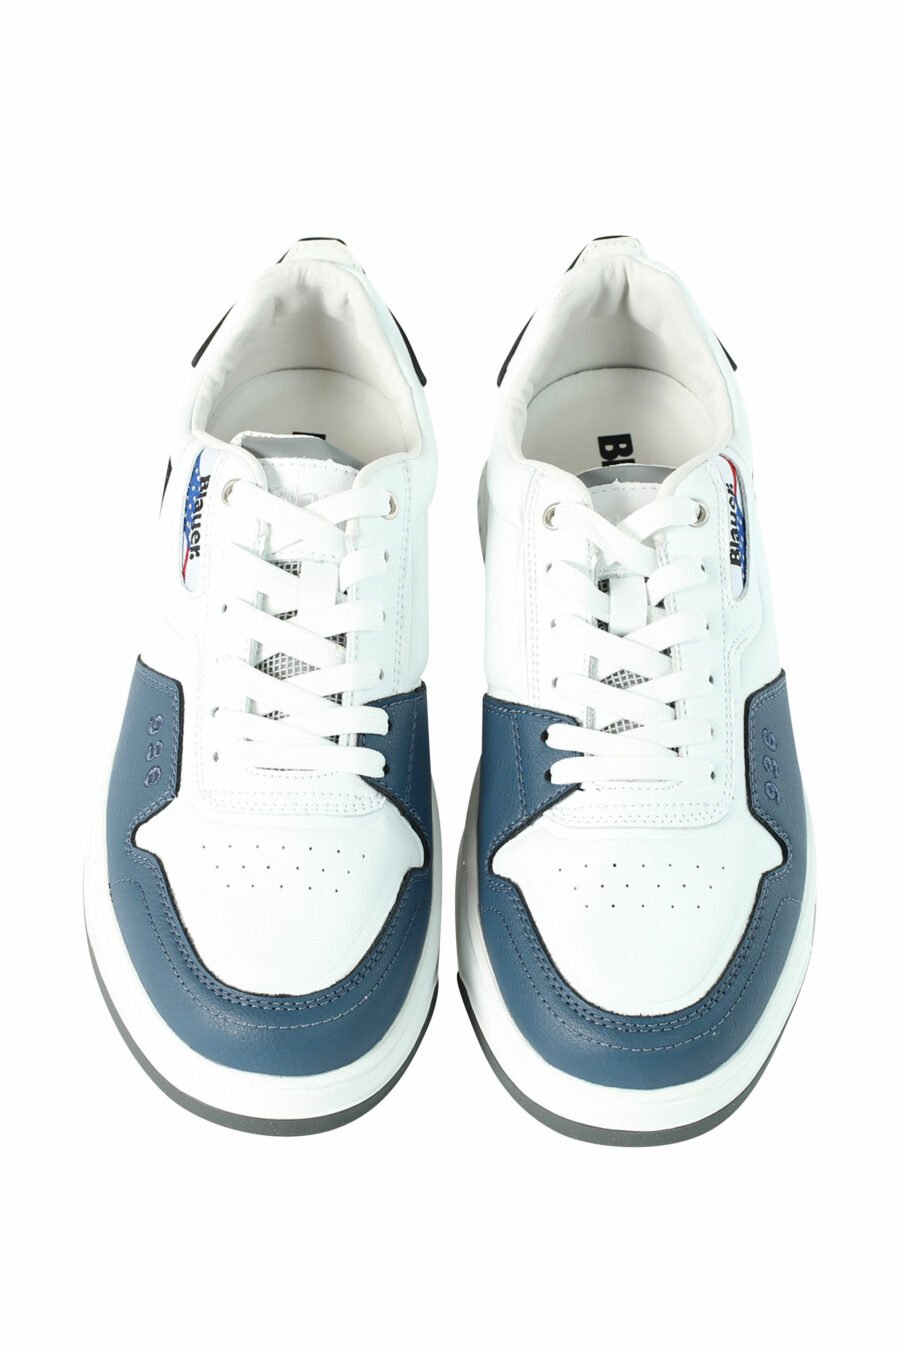 Zapatillas "HARPER" blancas con azul - 8058156494909 5